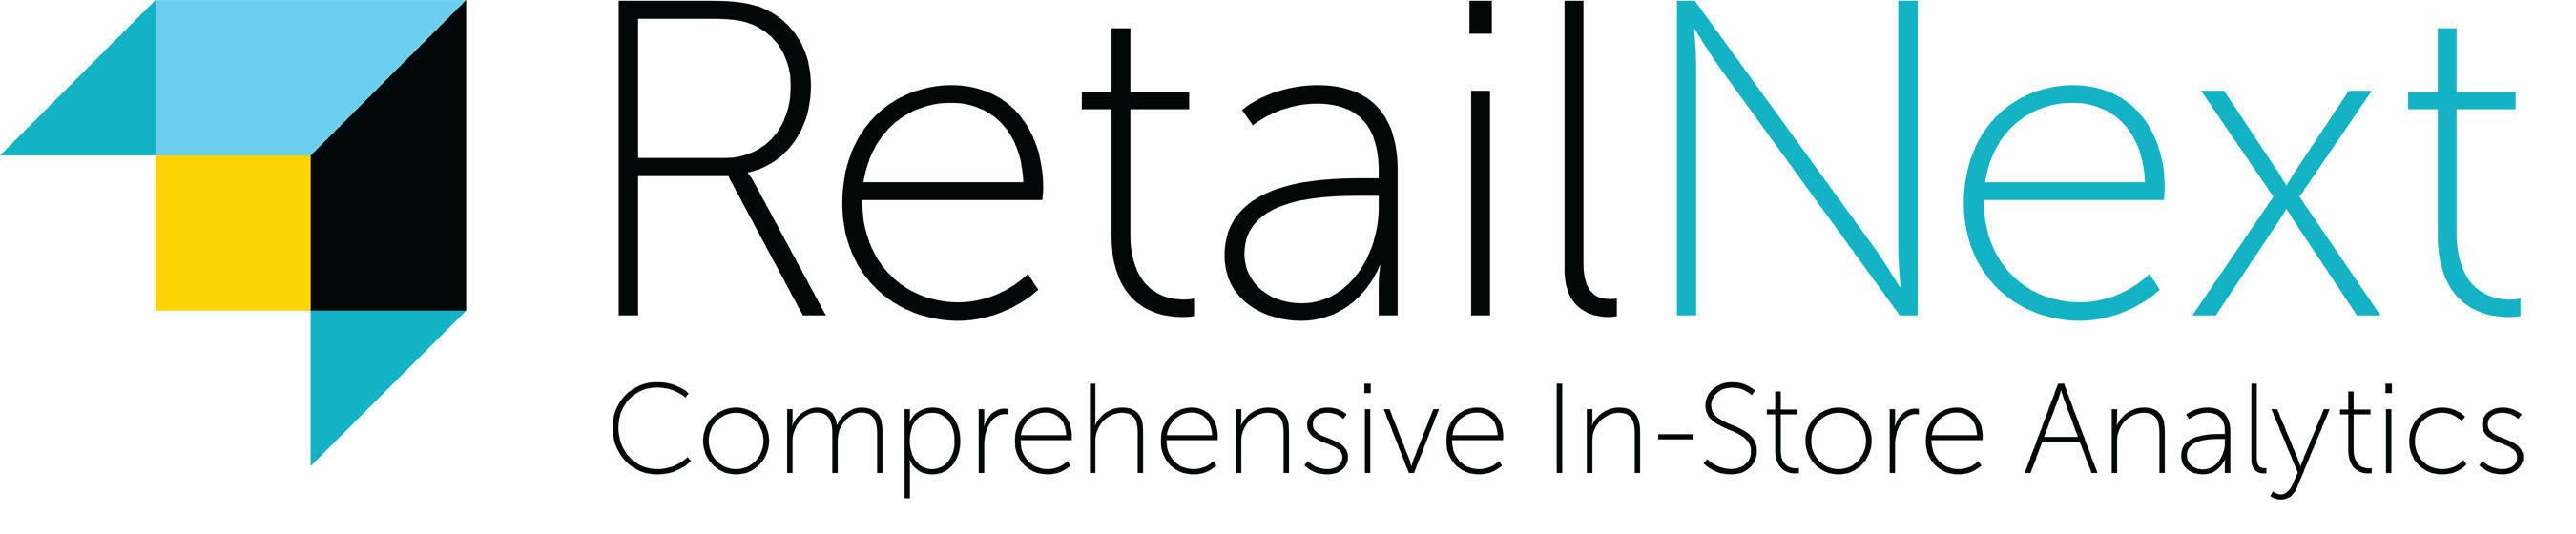 RetailNext logo.